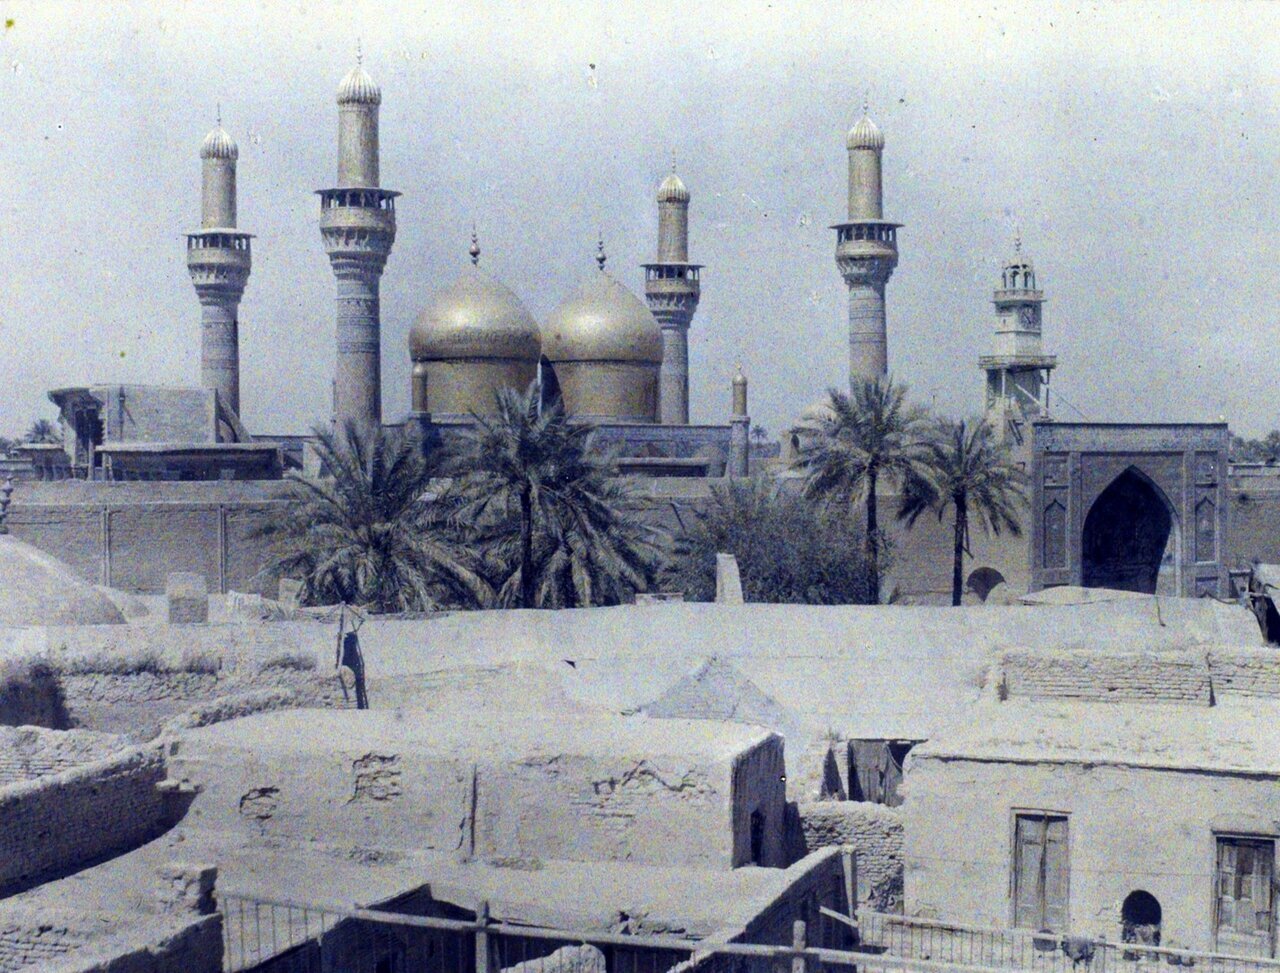 قدیمی ترین عکس های رنگی از حرم امام حسین(ع) و حضرت عباس(ع)